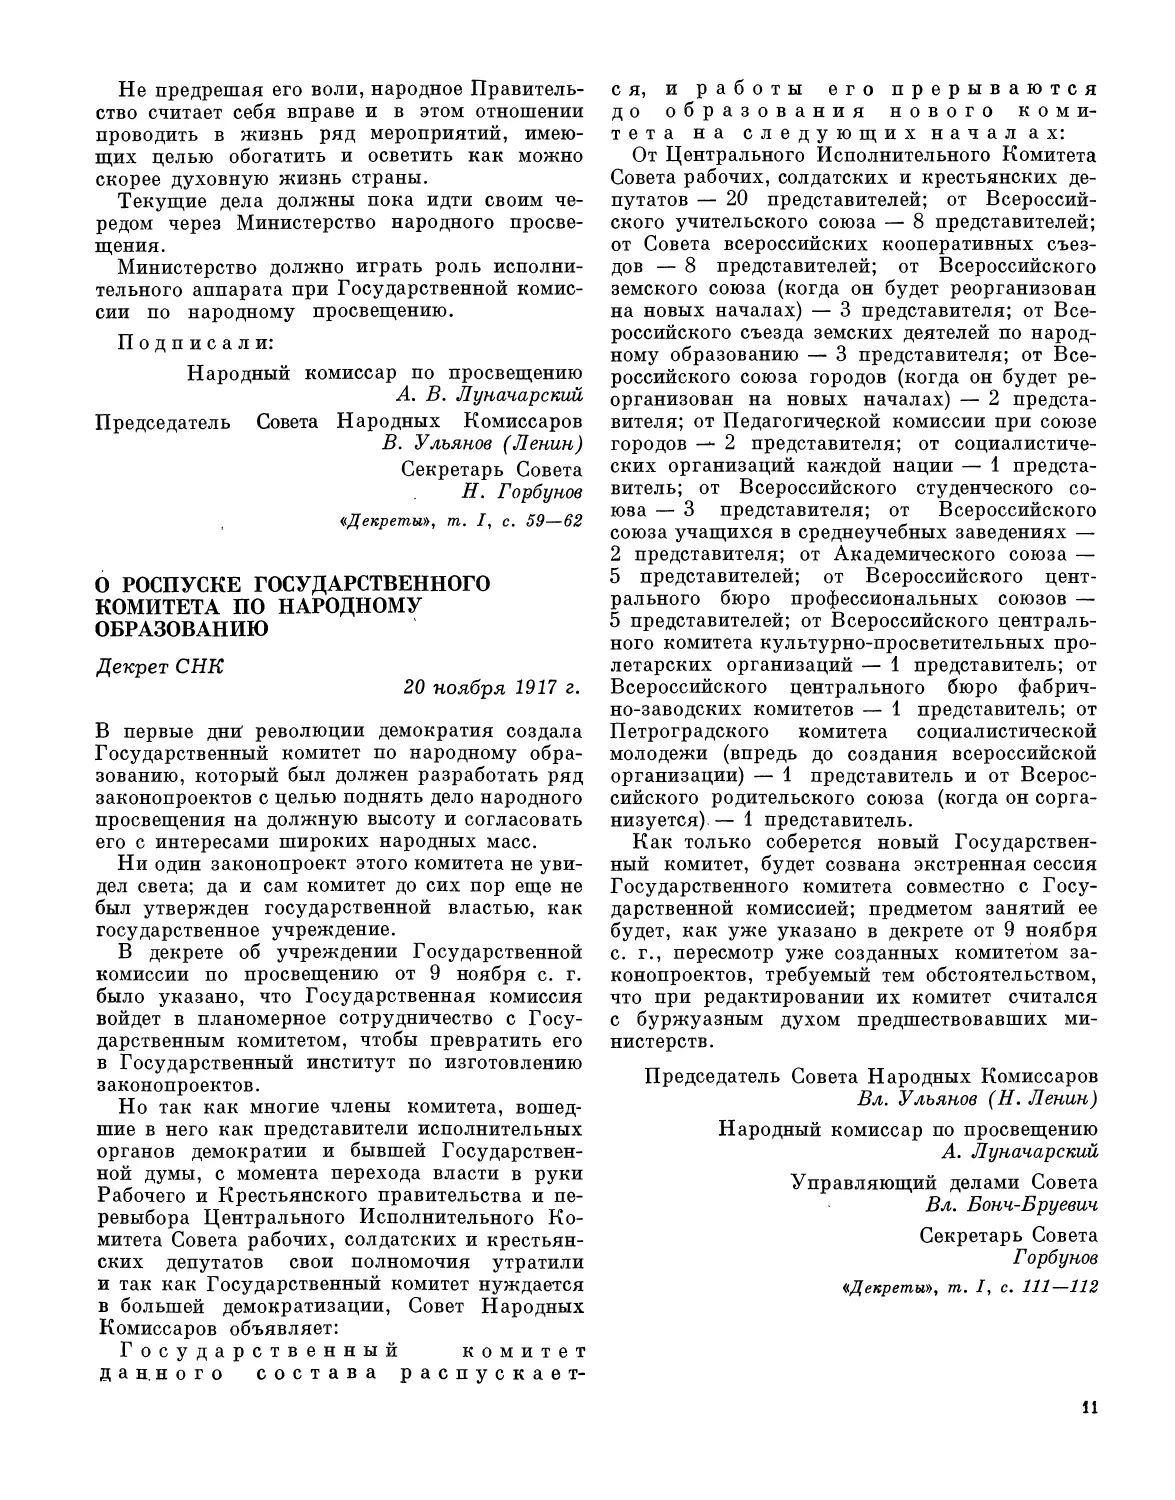 О роспуске Государственного комитета по народному образованию. Декрет СНК 20 ноября 1917 г.